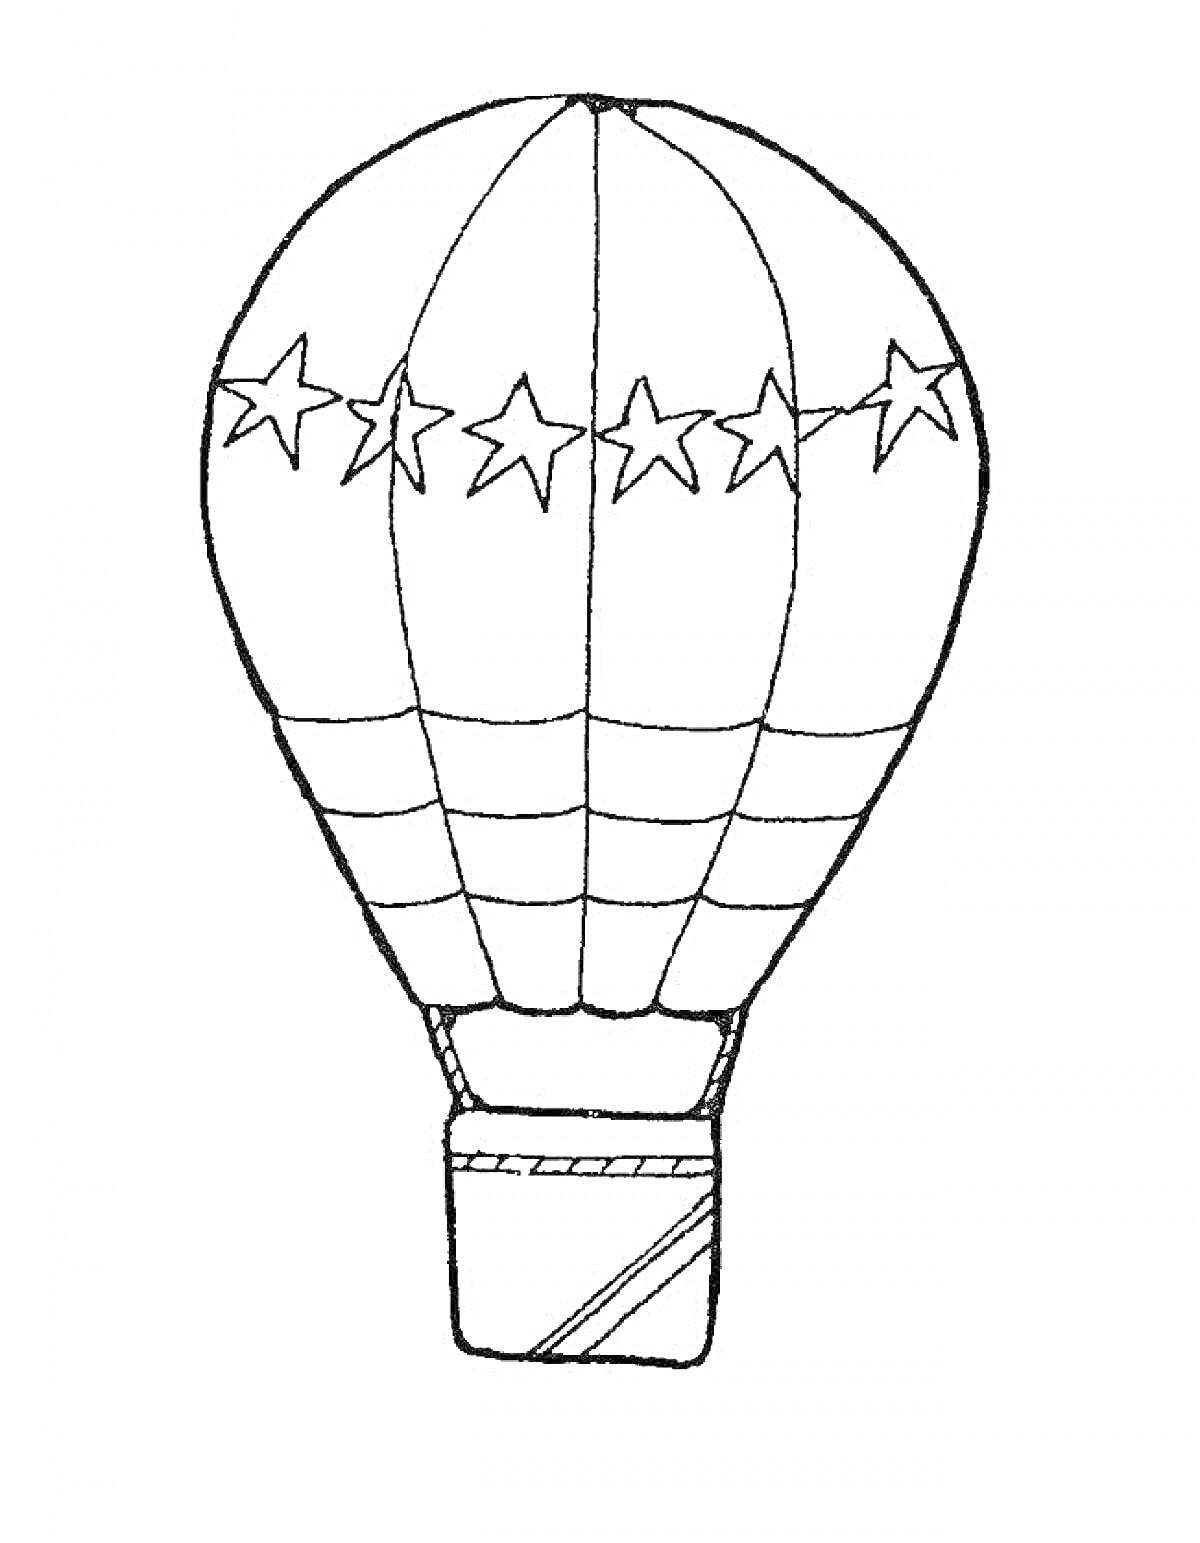 Воздушный шар с узором из звезд и полосок